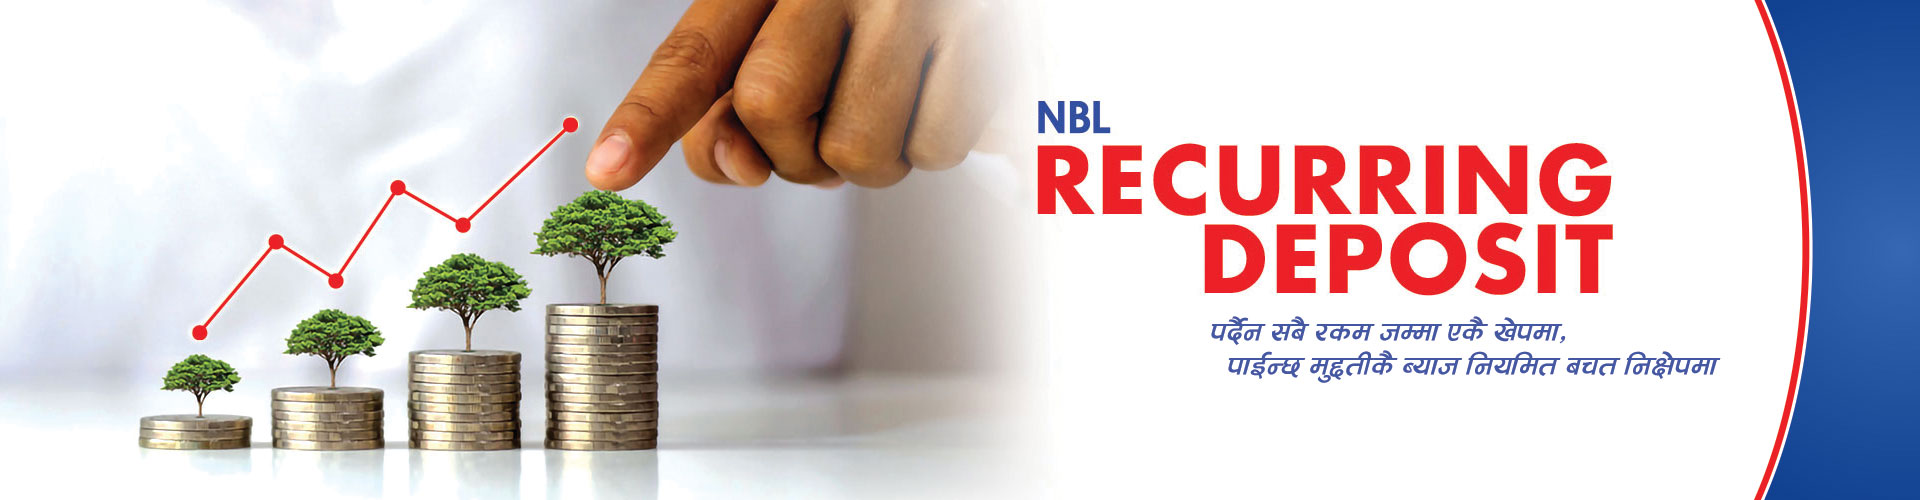 NBL Recurring Deposit